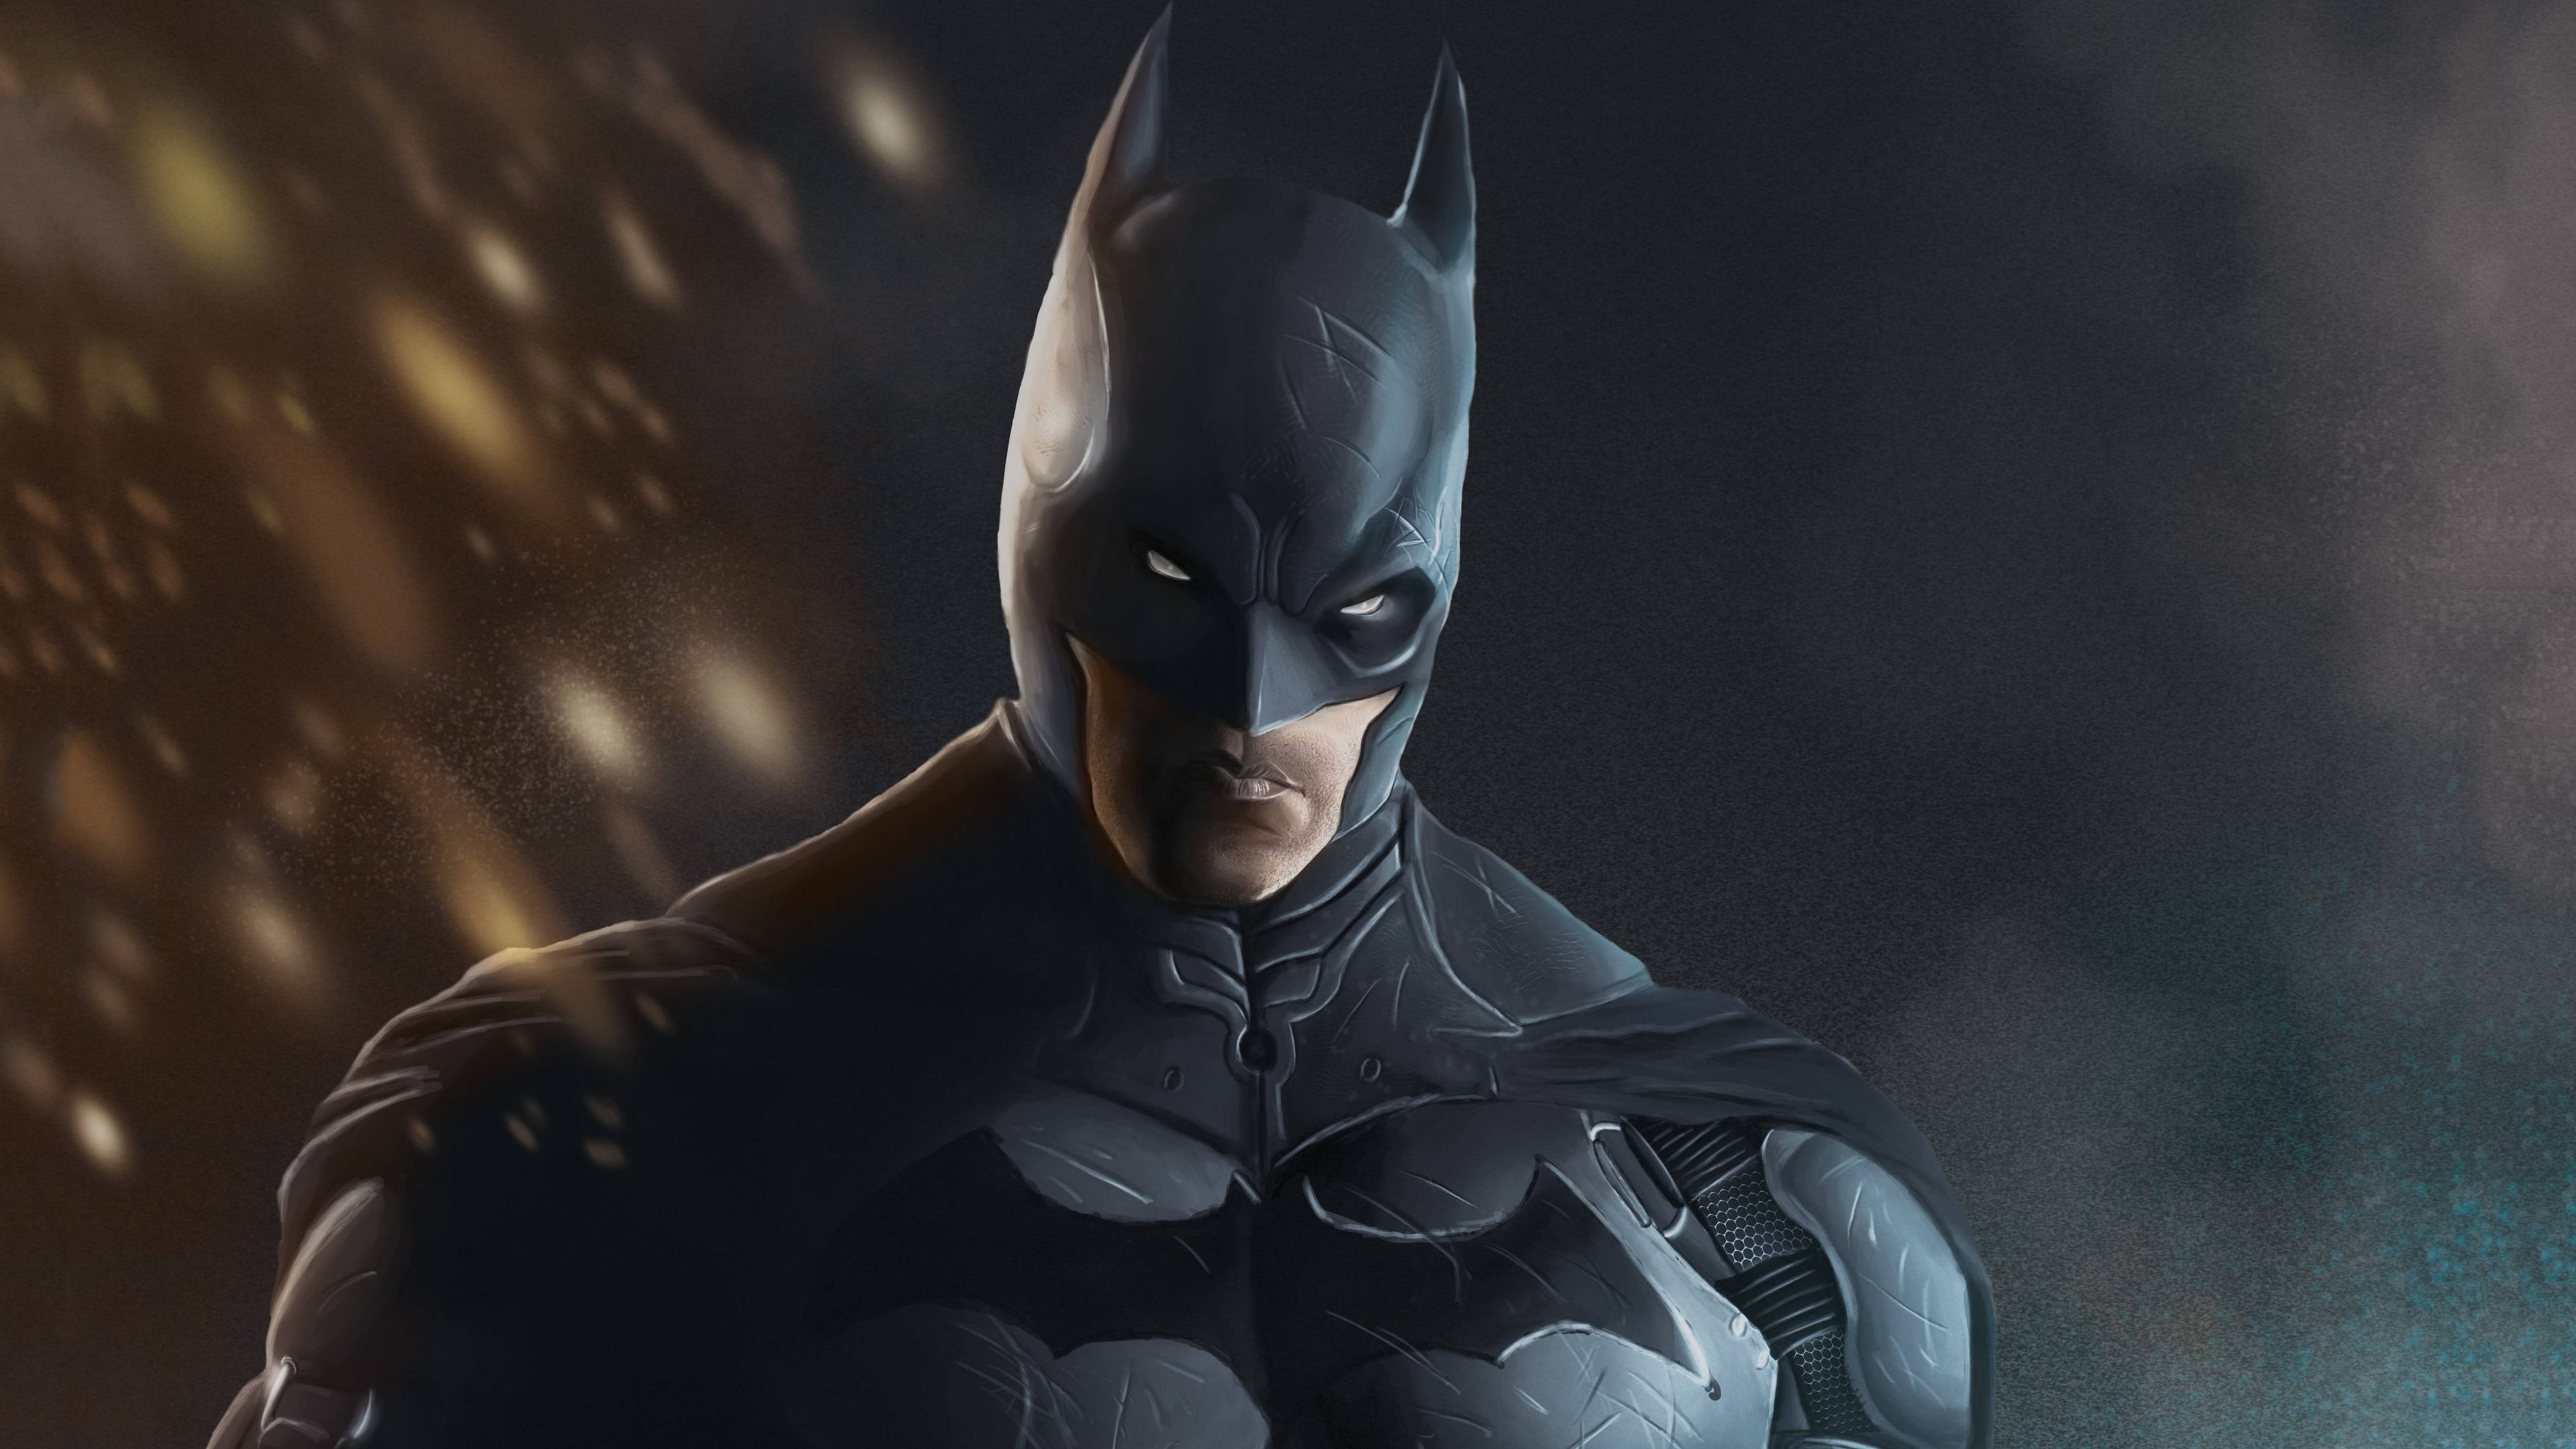 Batman In Bat-suit Arkham City 4k Wallpaper